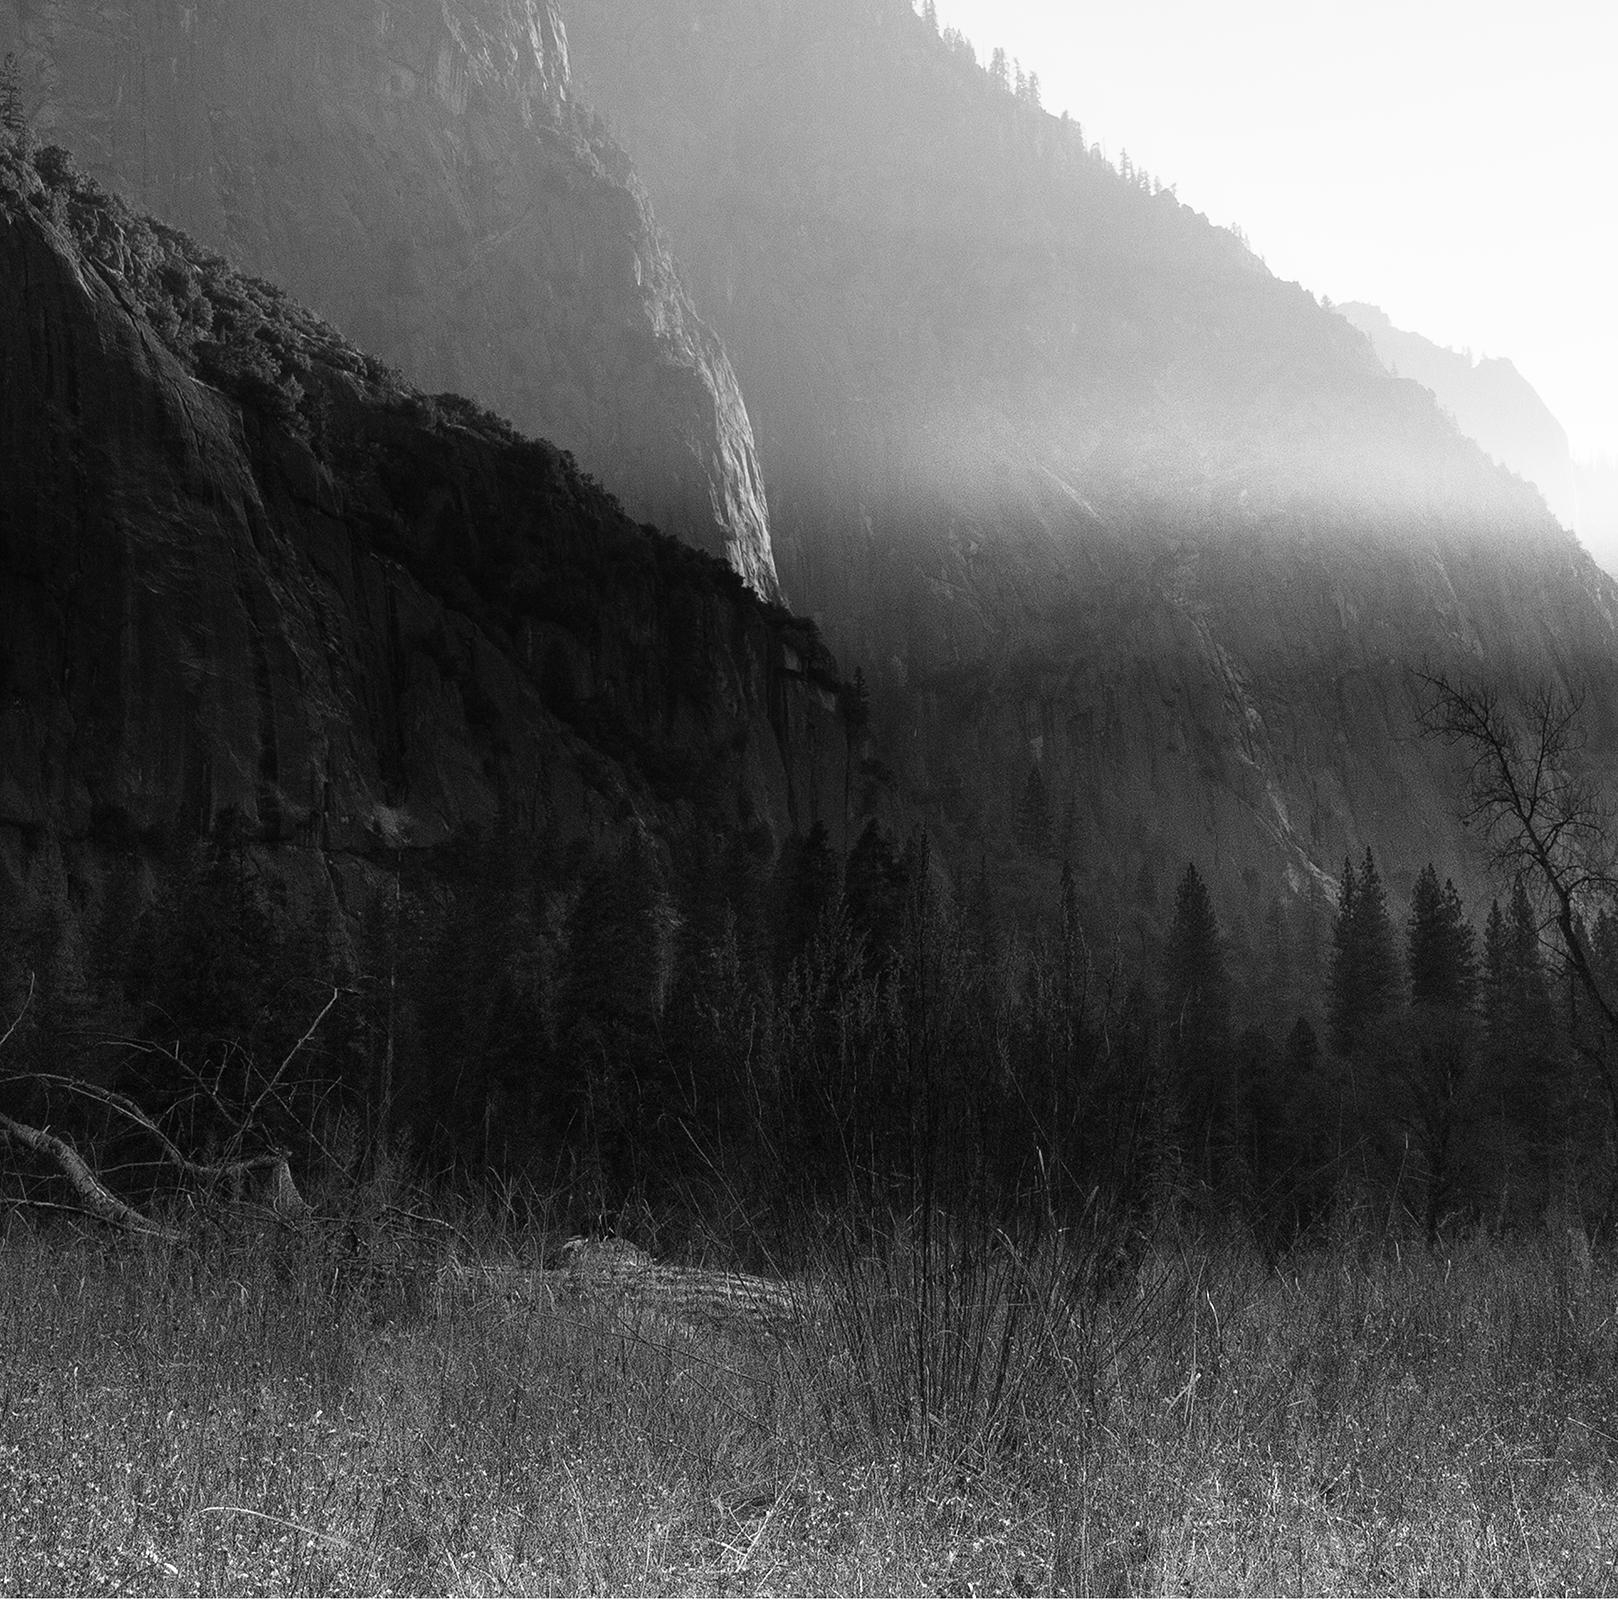 Dernière lumière 
Edition limitée (1 sur 25) Photographie d'archive. Non encadré.
_________________
Le crépuscule allume ses projecteurs, projetant des silhouettes profondes et révélant les riches couches de la vaste beauté de la vallée de Yosemite.